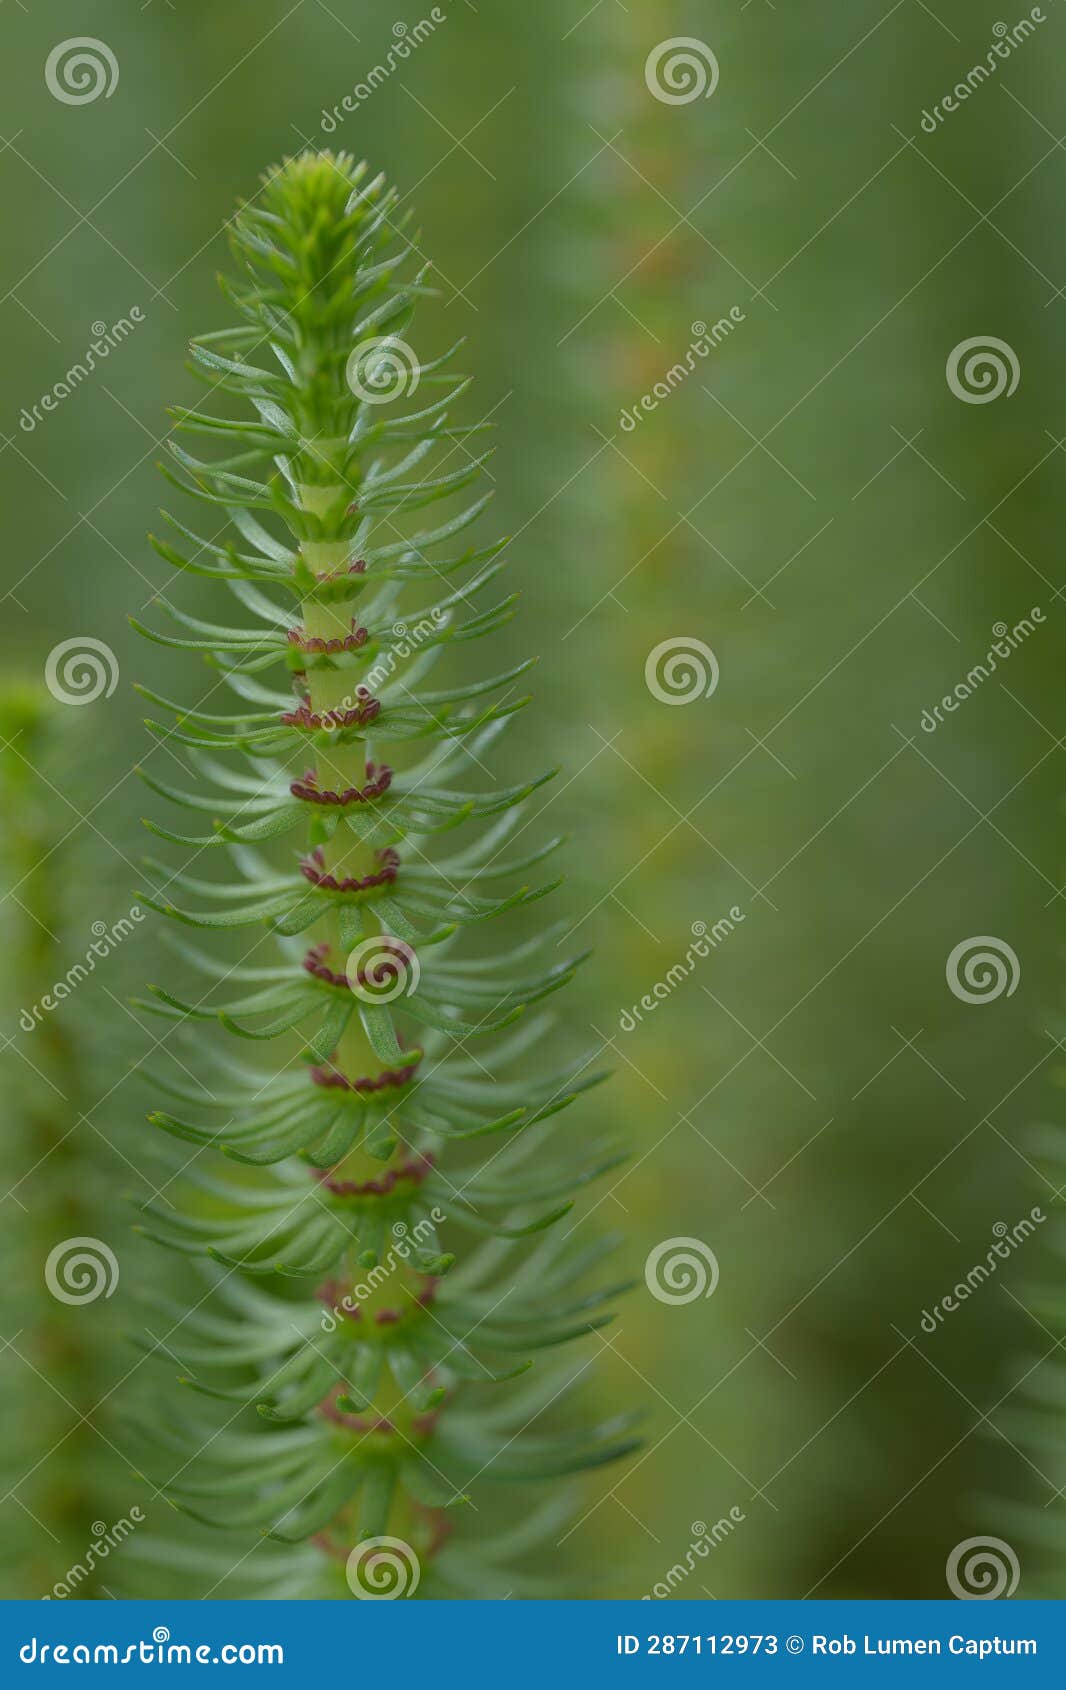 mareâs-tail hippuris vulgaris, a flowering plant